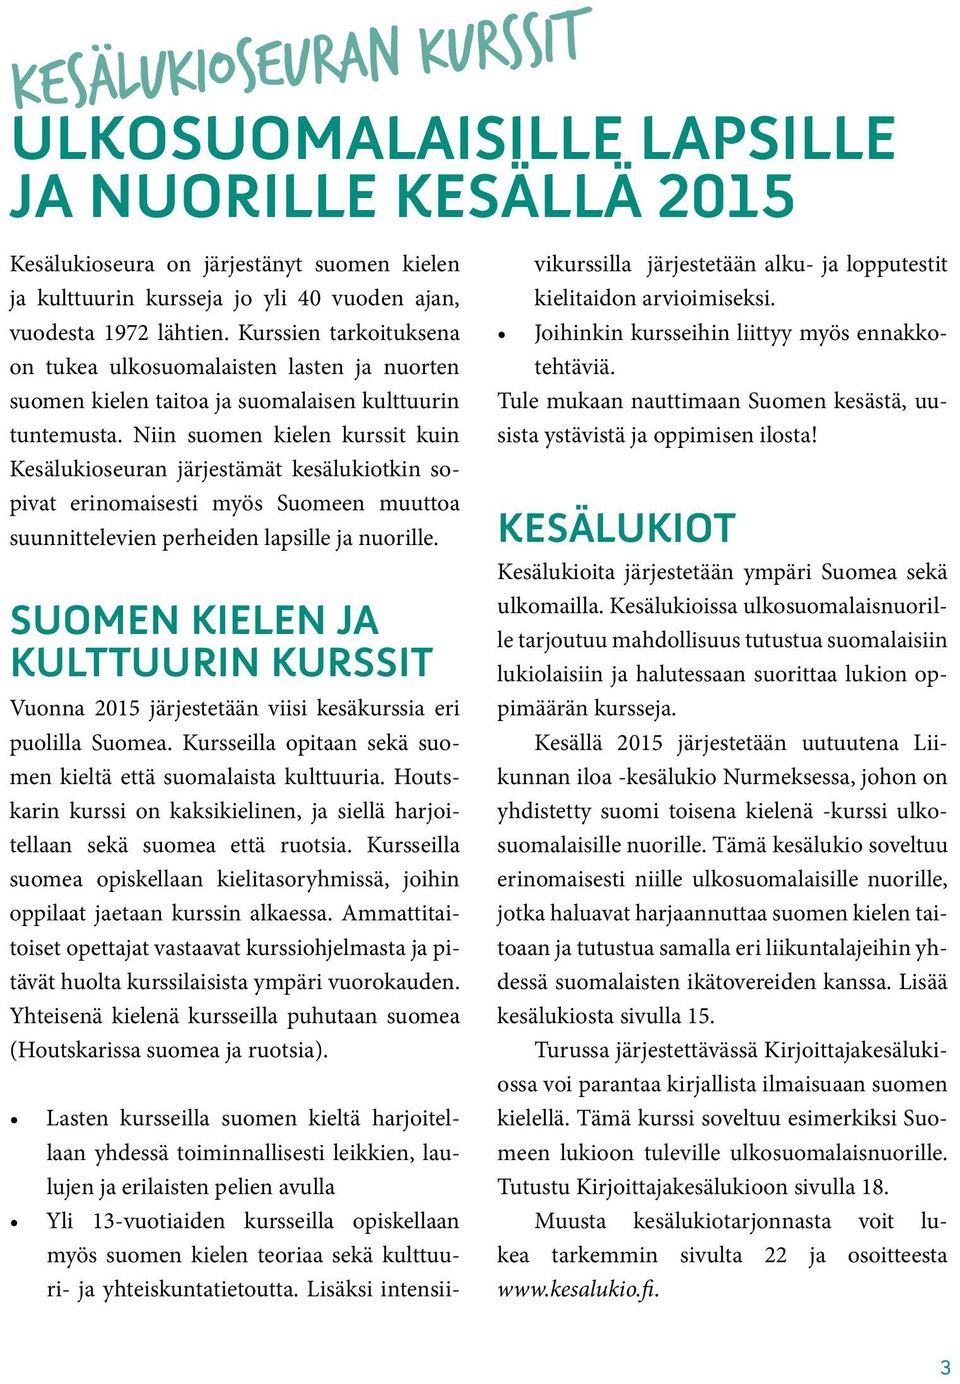 Niin suomen kielen kurssit kuin Kesälukioseuran järjestämät kesälukiotkin sopivat erinomaisesti myös Suomeen muuttoa suunnittelevien perheiden lapsille ja nuorille.